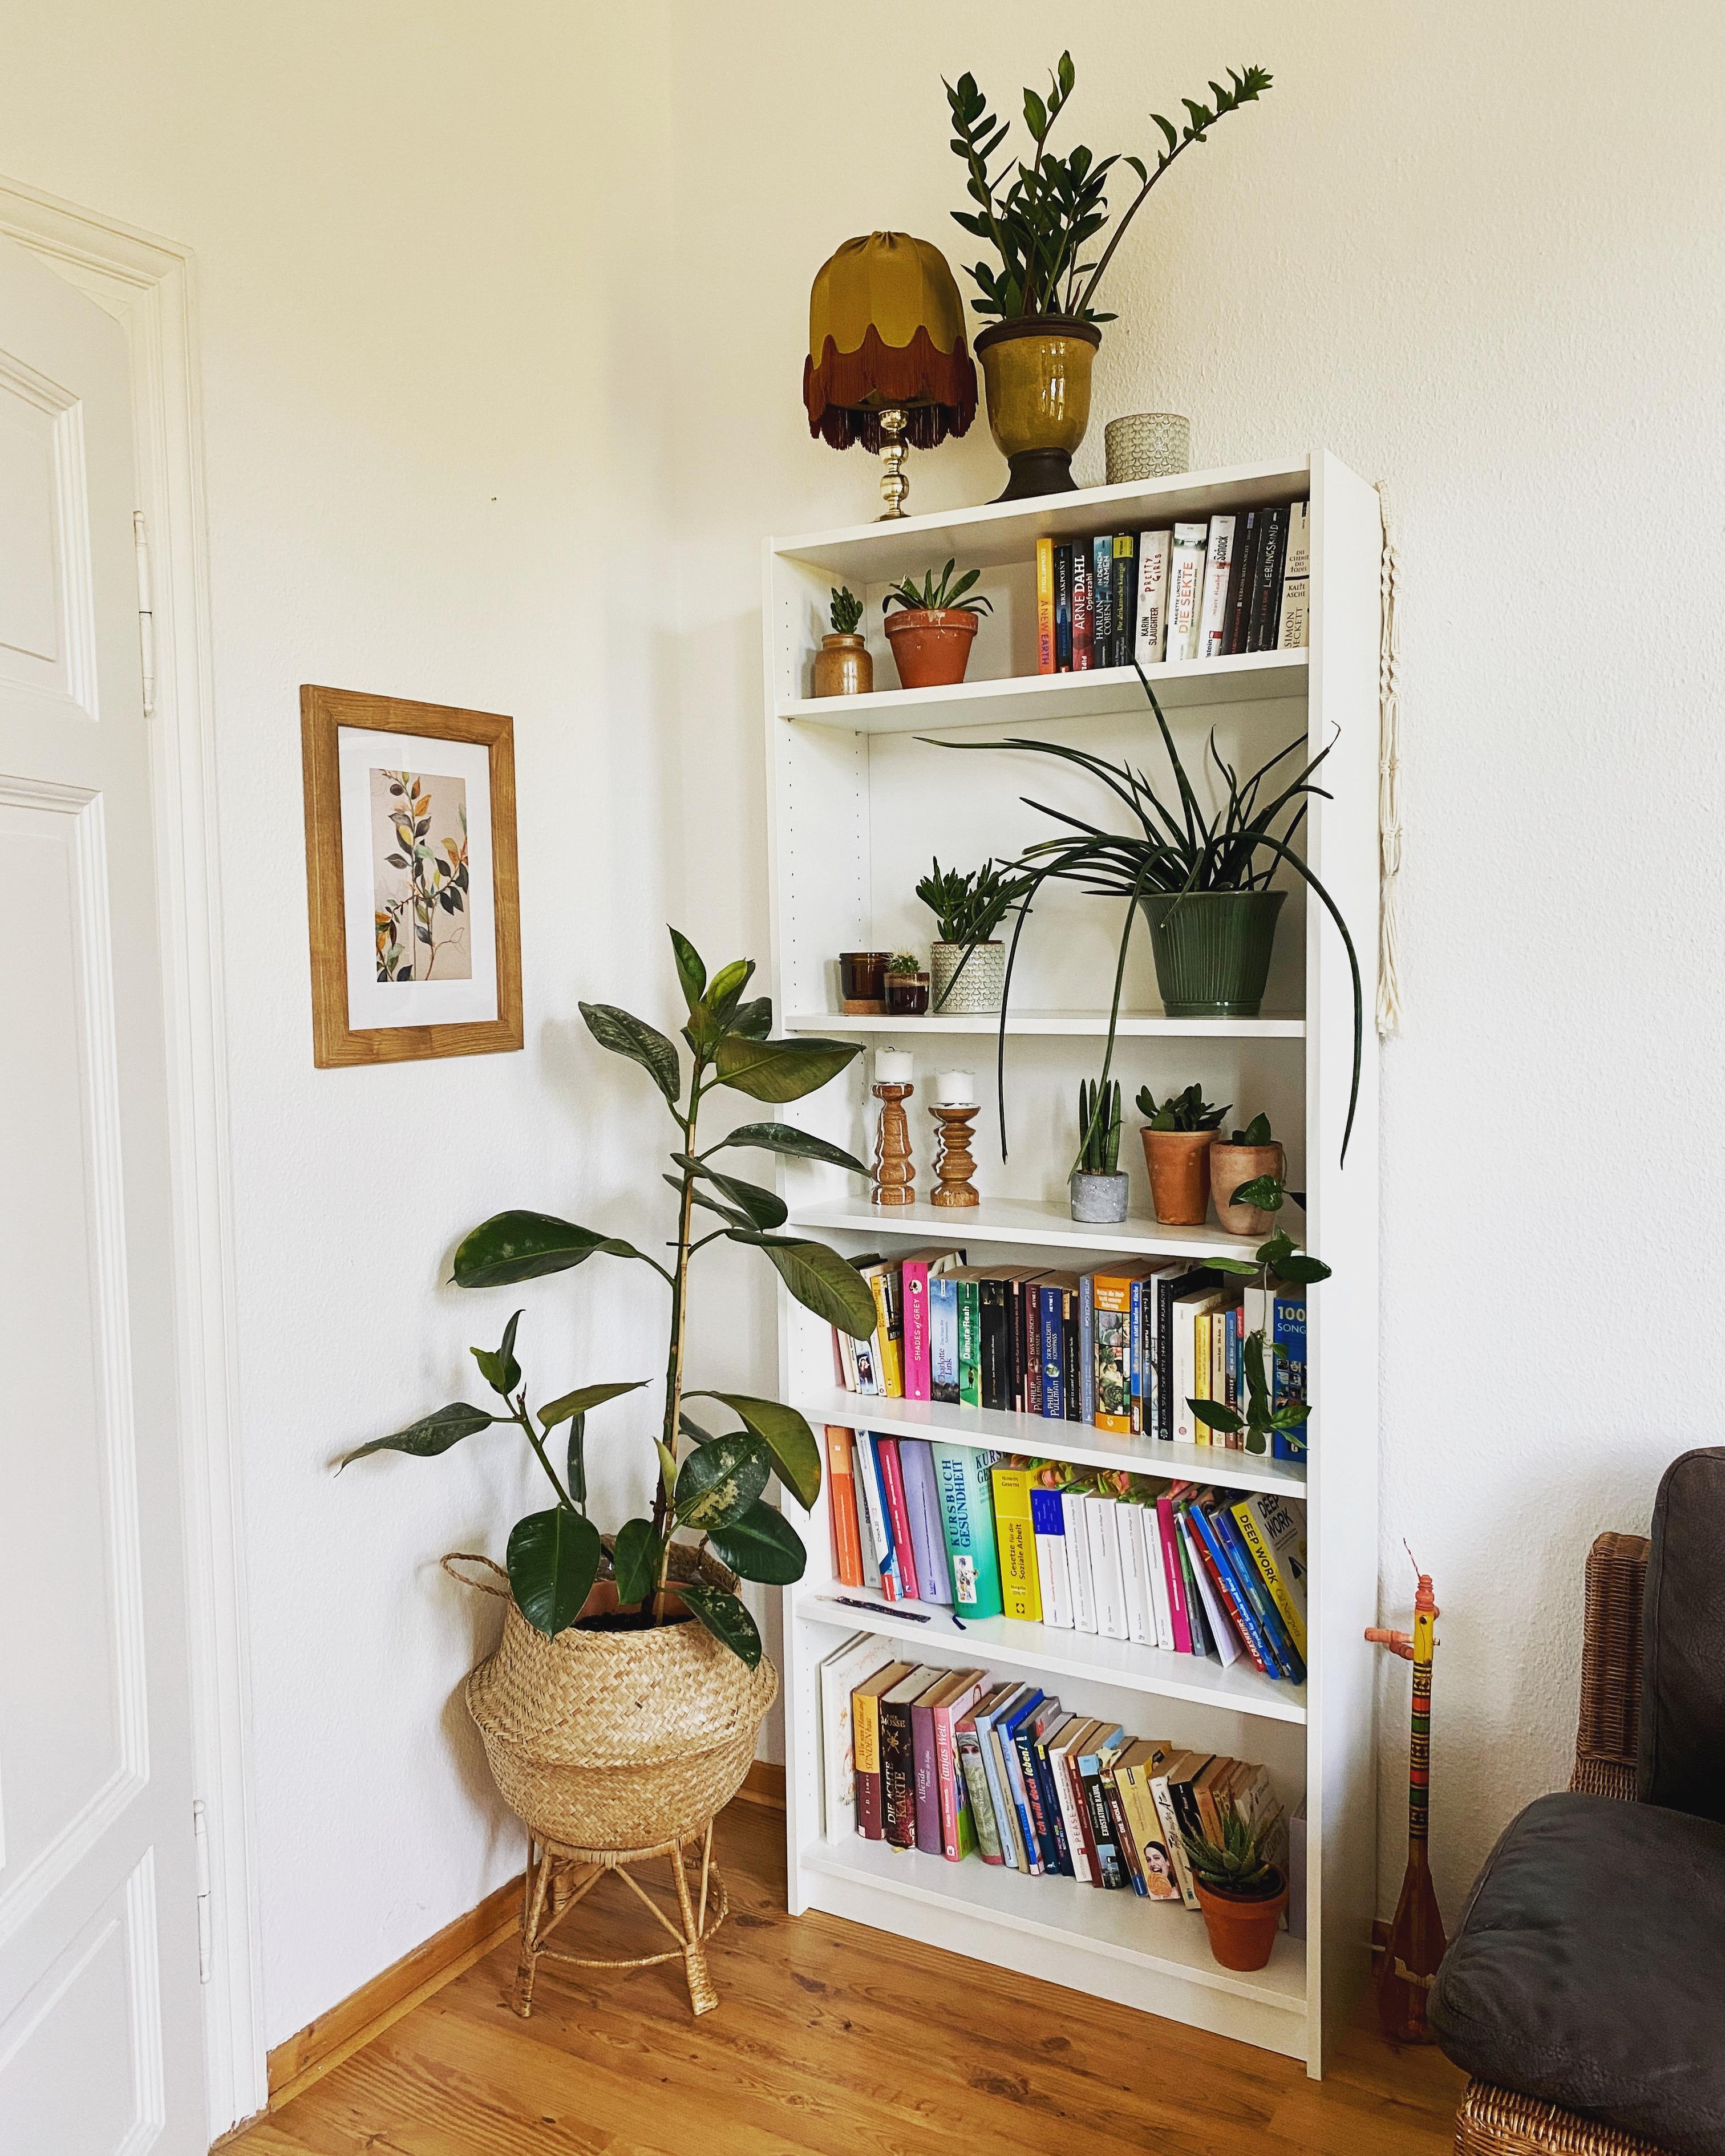 Neue Bücherecke 📚🪴
#bücherregal #billyregal #ikeabilly #vintage #plants #wohnzimmer #altbau